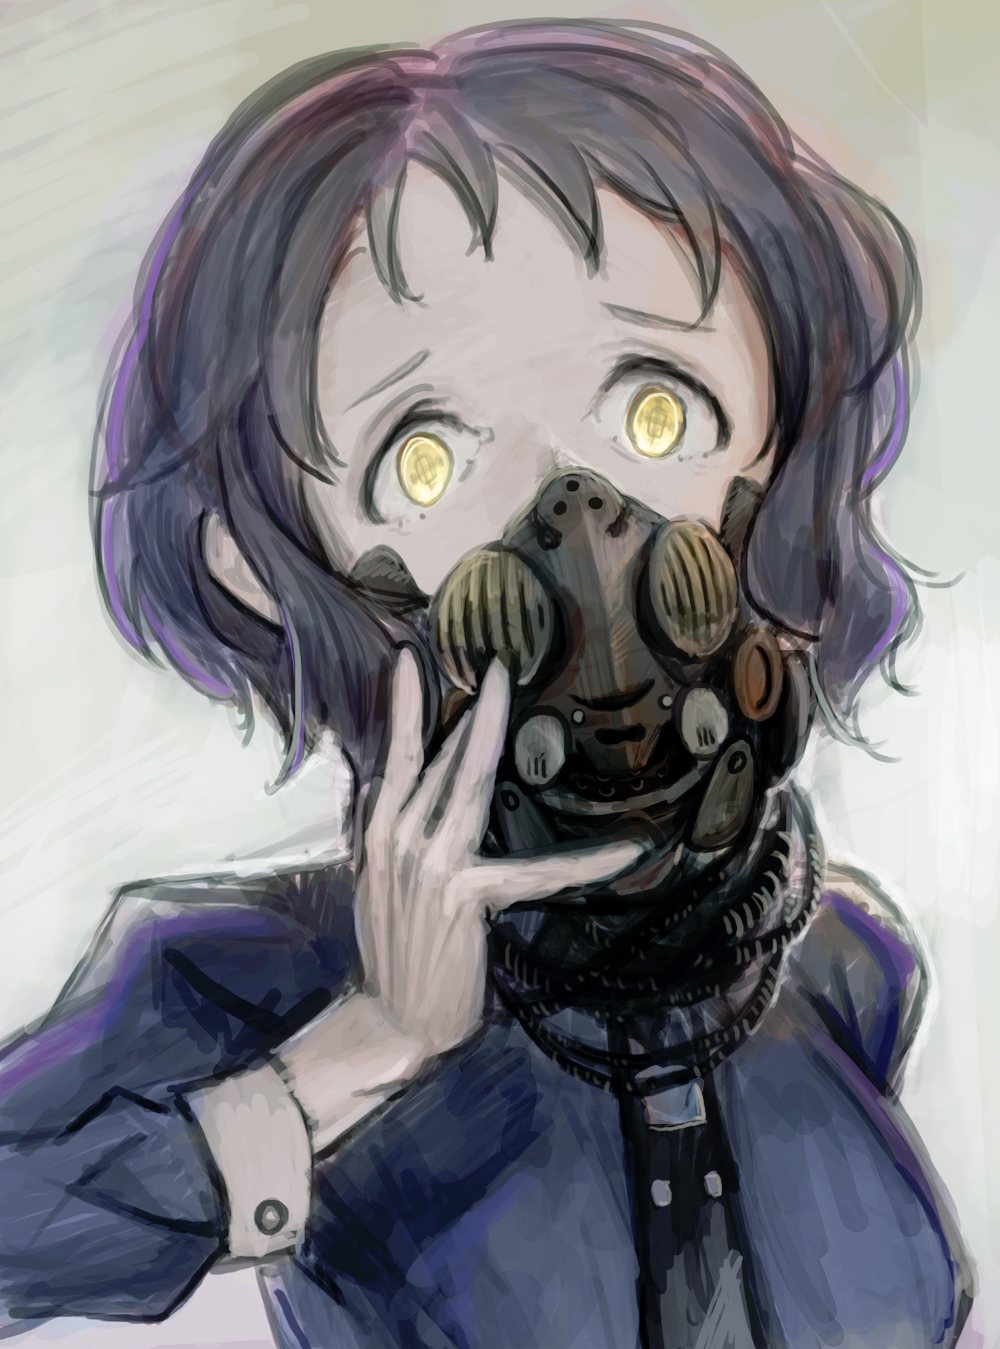 ガスマスク女子 イラスト集16枚 顔を覆う無機質な装置からただよう異形のオーラ